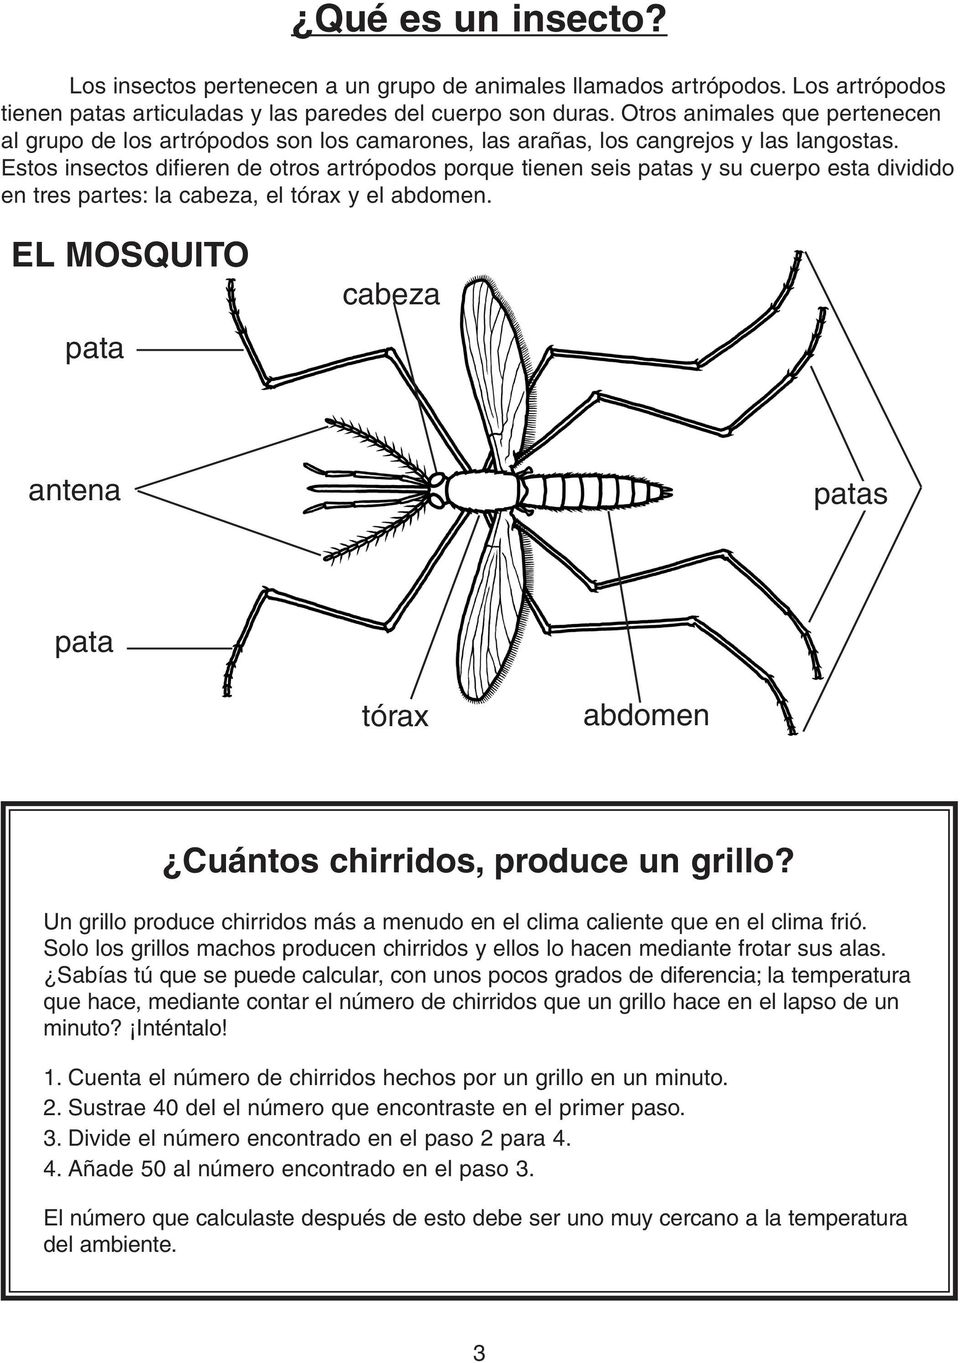 Estos insectos difieren de otros artrópodos porque tienen seis patas y su cuerpo esta dividido en tres partes: la cabeza, el tórax y el abdomen.